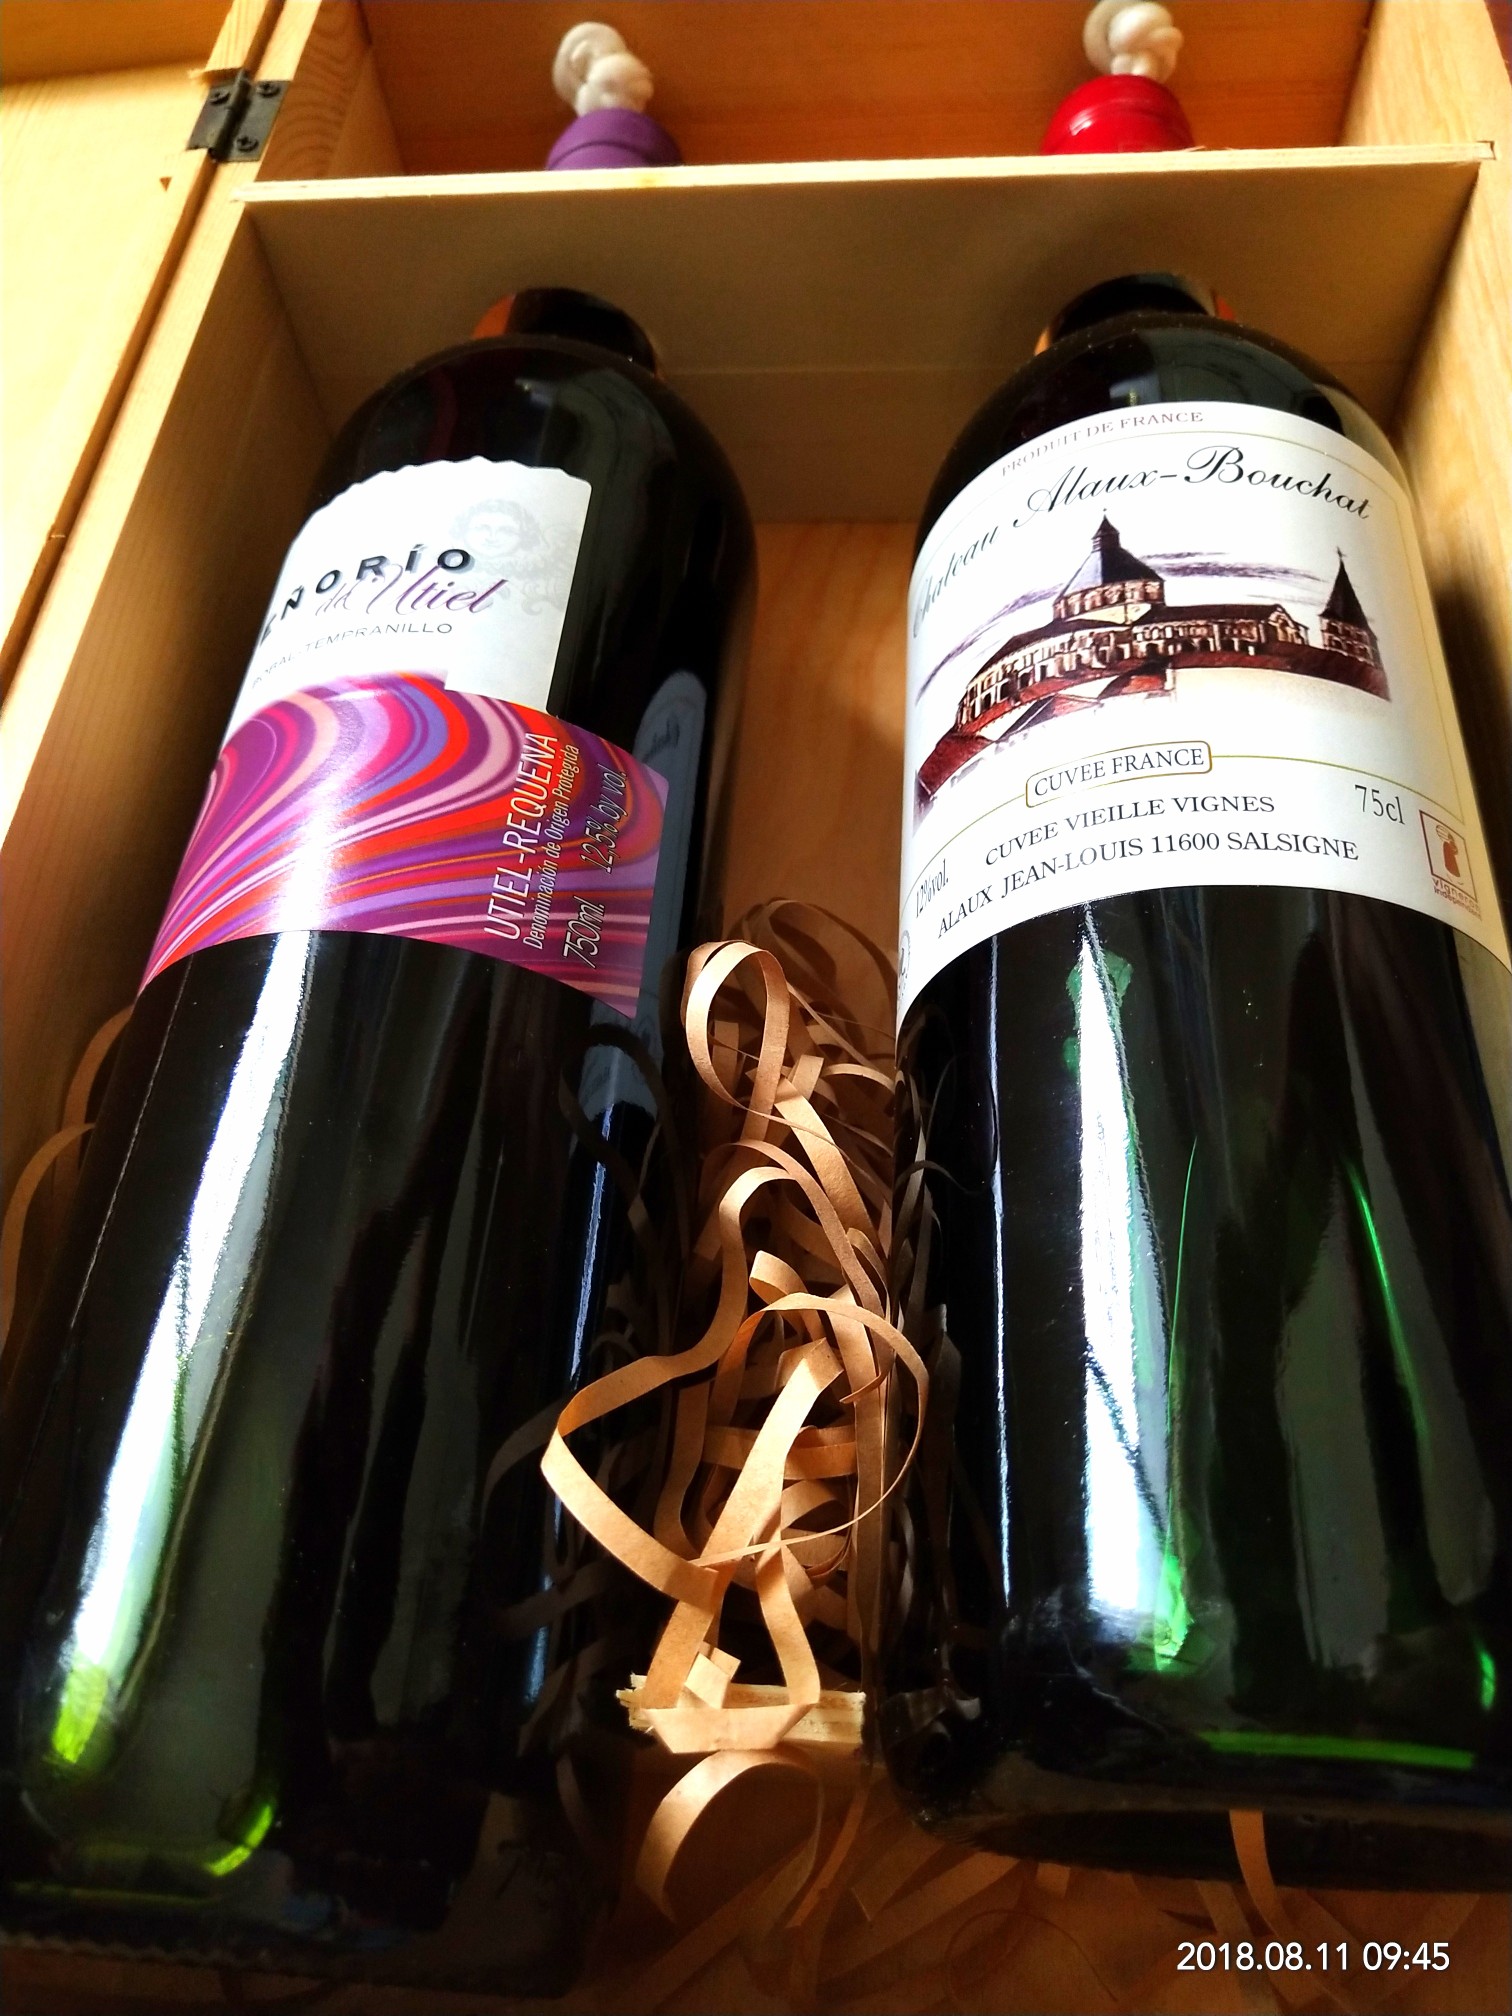 两瓶法国进口葡萄酒谁喜欢,保质期十年,皇家骑